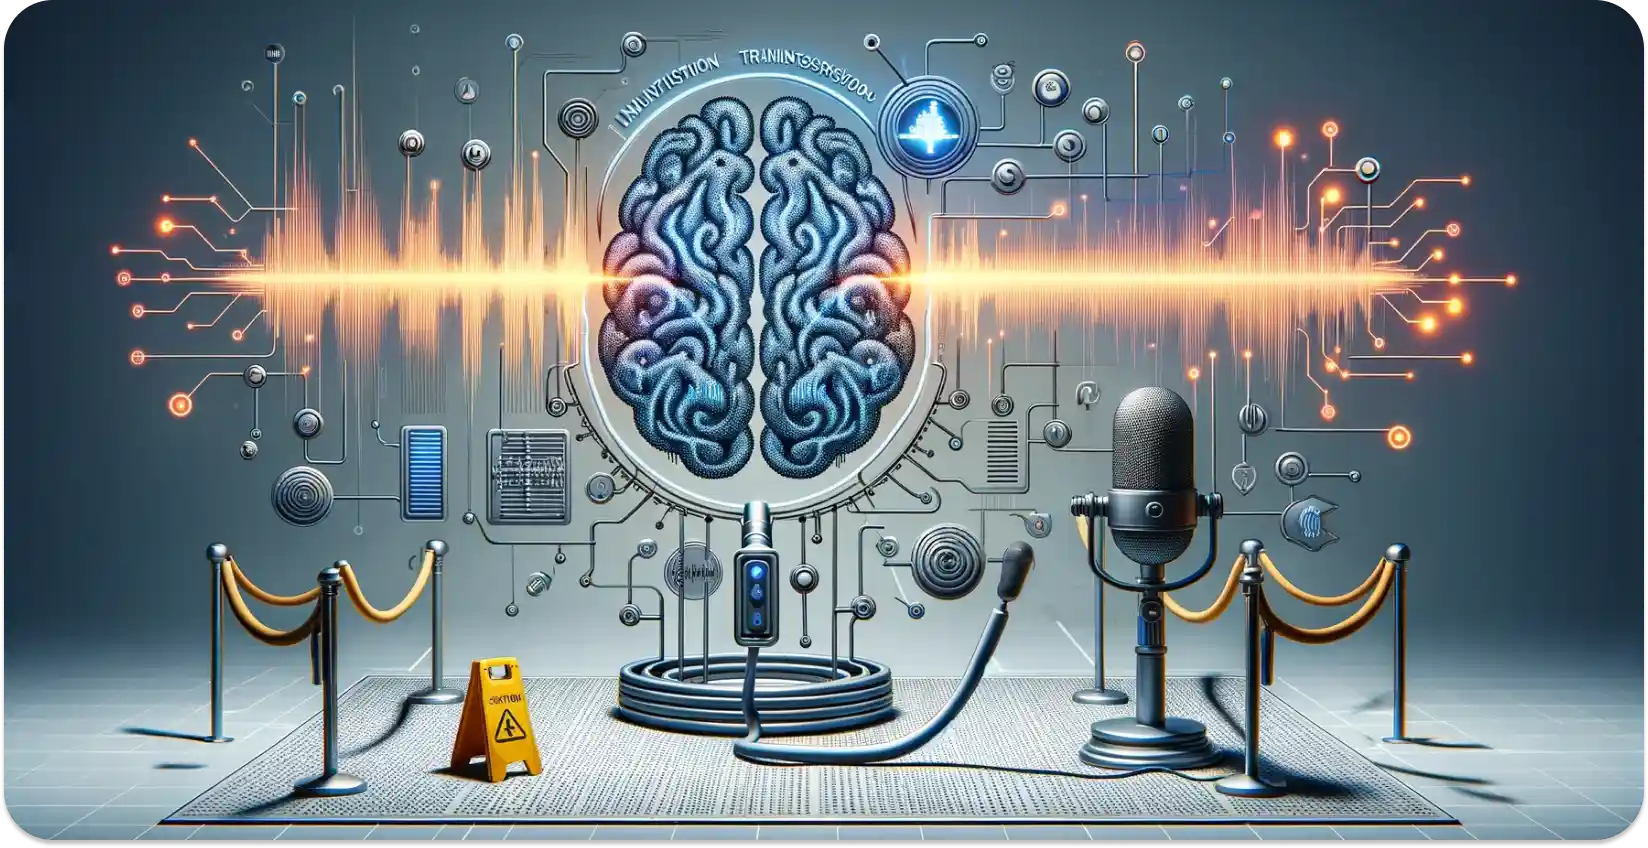 אמנות מושגית של מוח AI המעבד גלי קול לנתונים, המסמלים תמלול שמע.